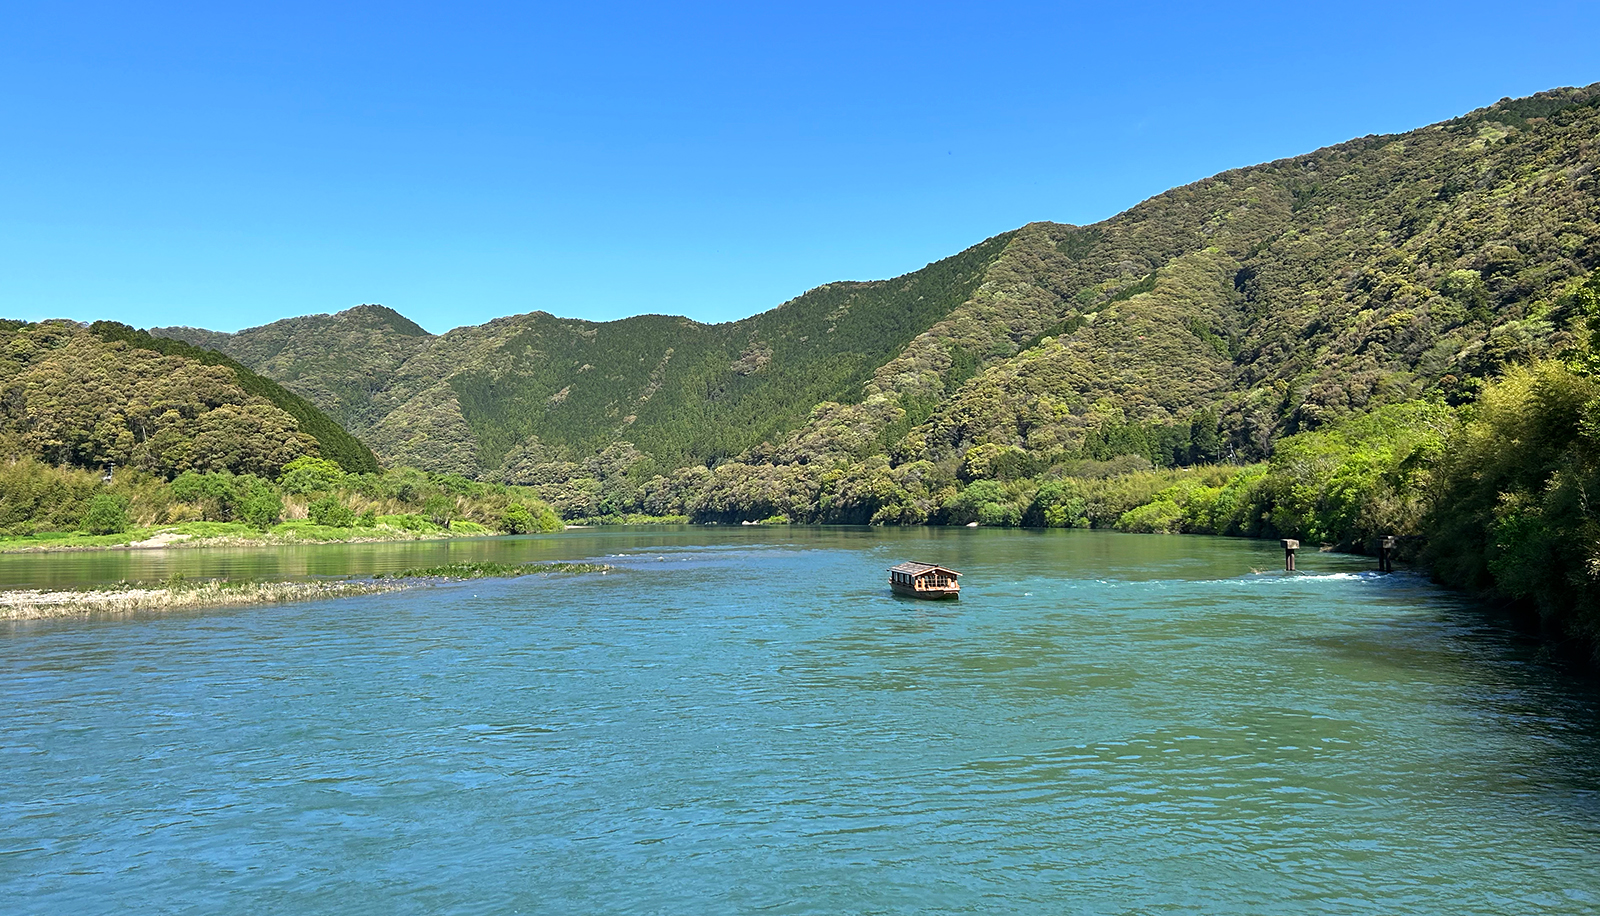 四萬十川因未興建水庫設施，被稱為日本最後一道清流～全長達196公里，是四國最長的河川，
今日河水色澤偏祖母綠，四季顏色都會有些許不同，有時偏寶石藍。